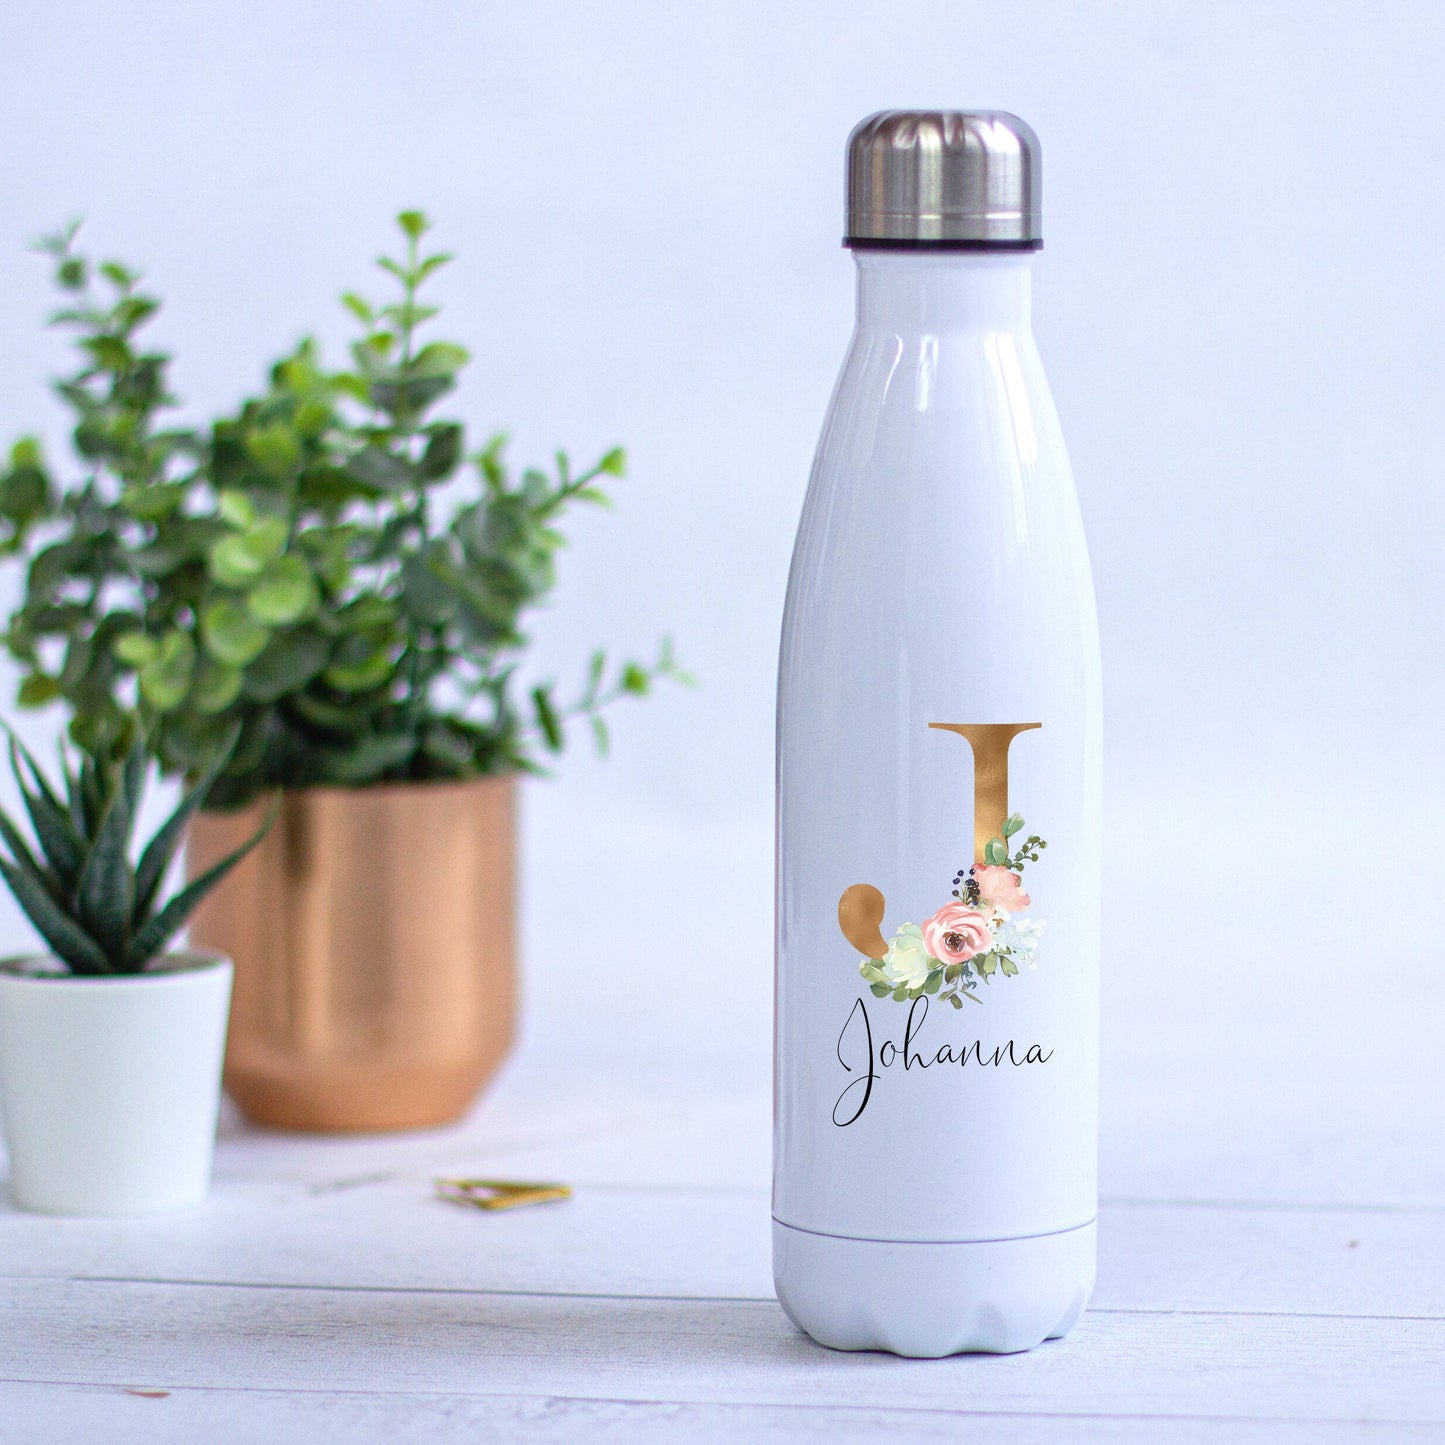 Thermoskanne Trinkflasche Edelstahl personalisiert mit Initial und Wunschwort - Design BLUSH , Geburtstag, Geschenk für die Hebamme